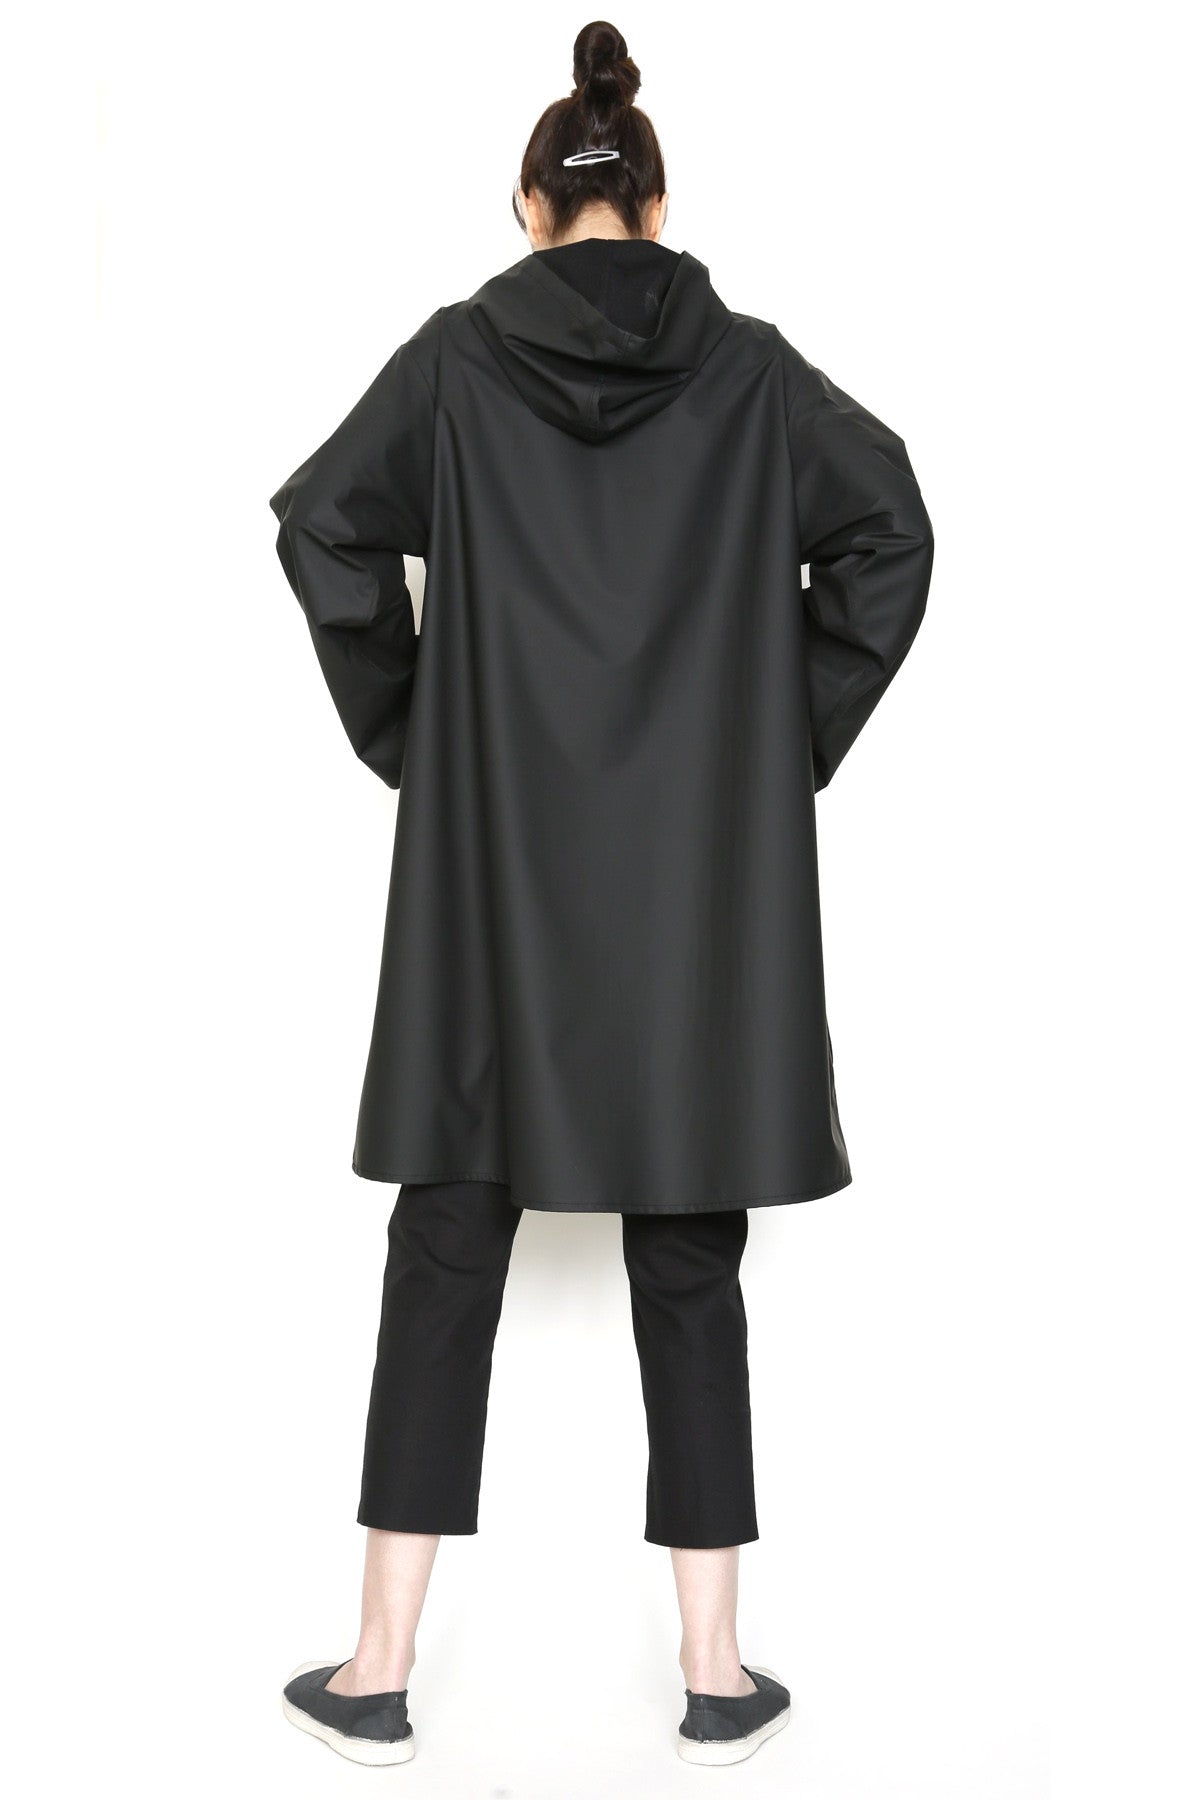 Zip Front Hooded Rain Jacket in Water-Repellent Fabric-5